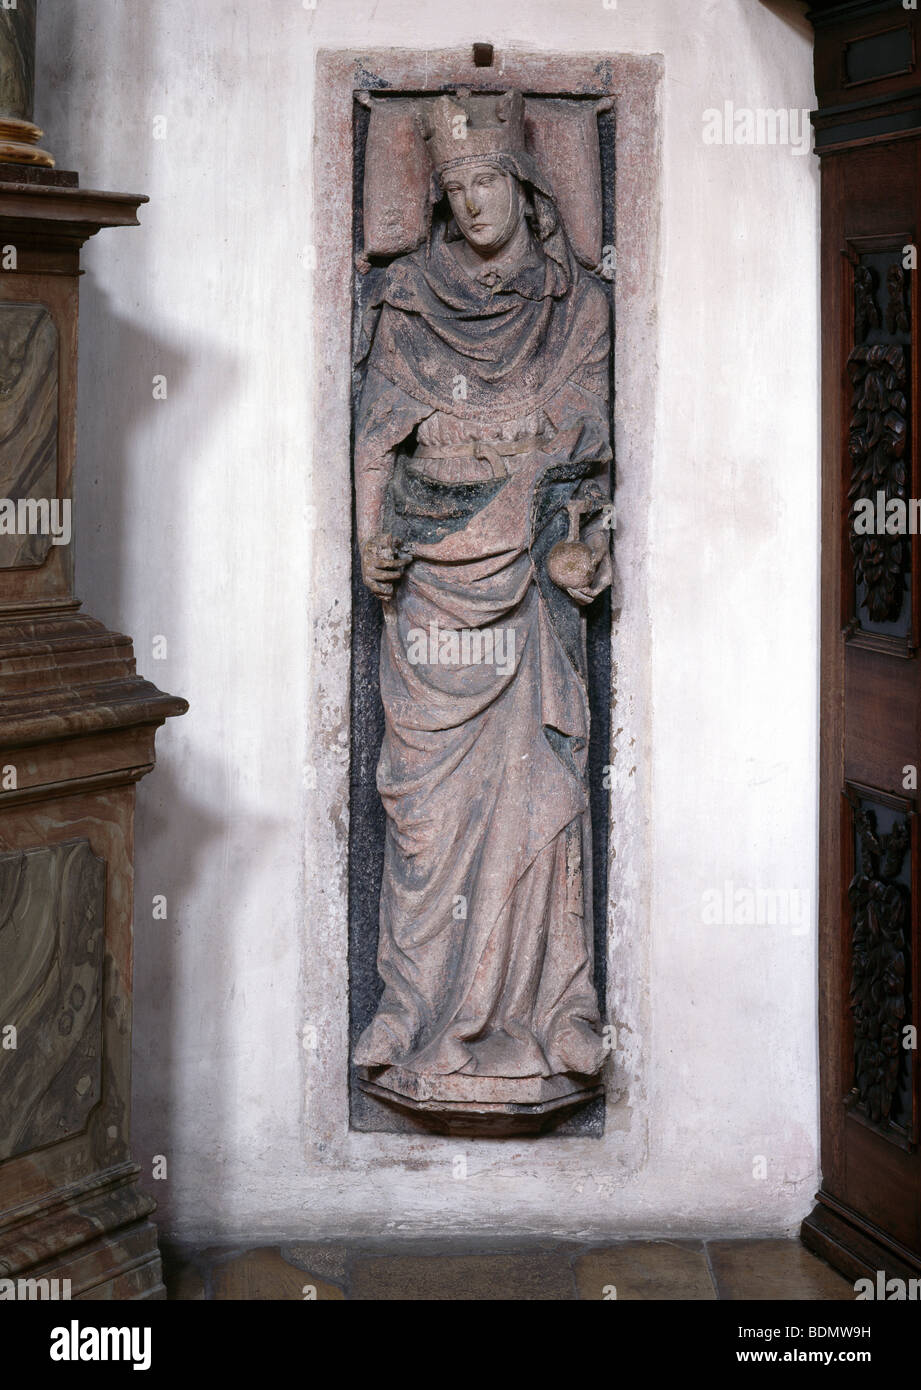 Regensburg, päpstliche Basilique St Emmeram, veilleur für Hemma, Gemahlin Ludwigs des Deutschen, um 1280 Banque D'Images